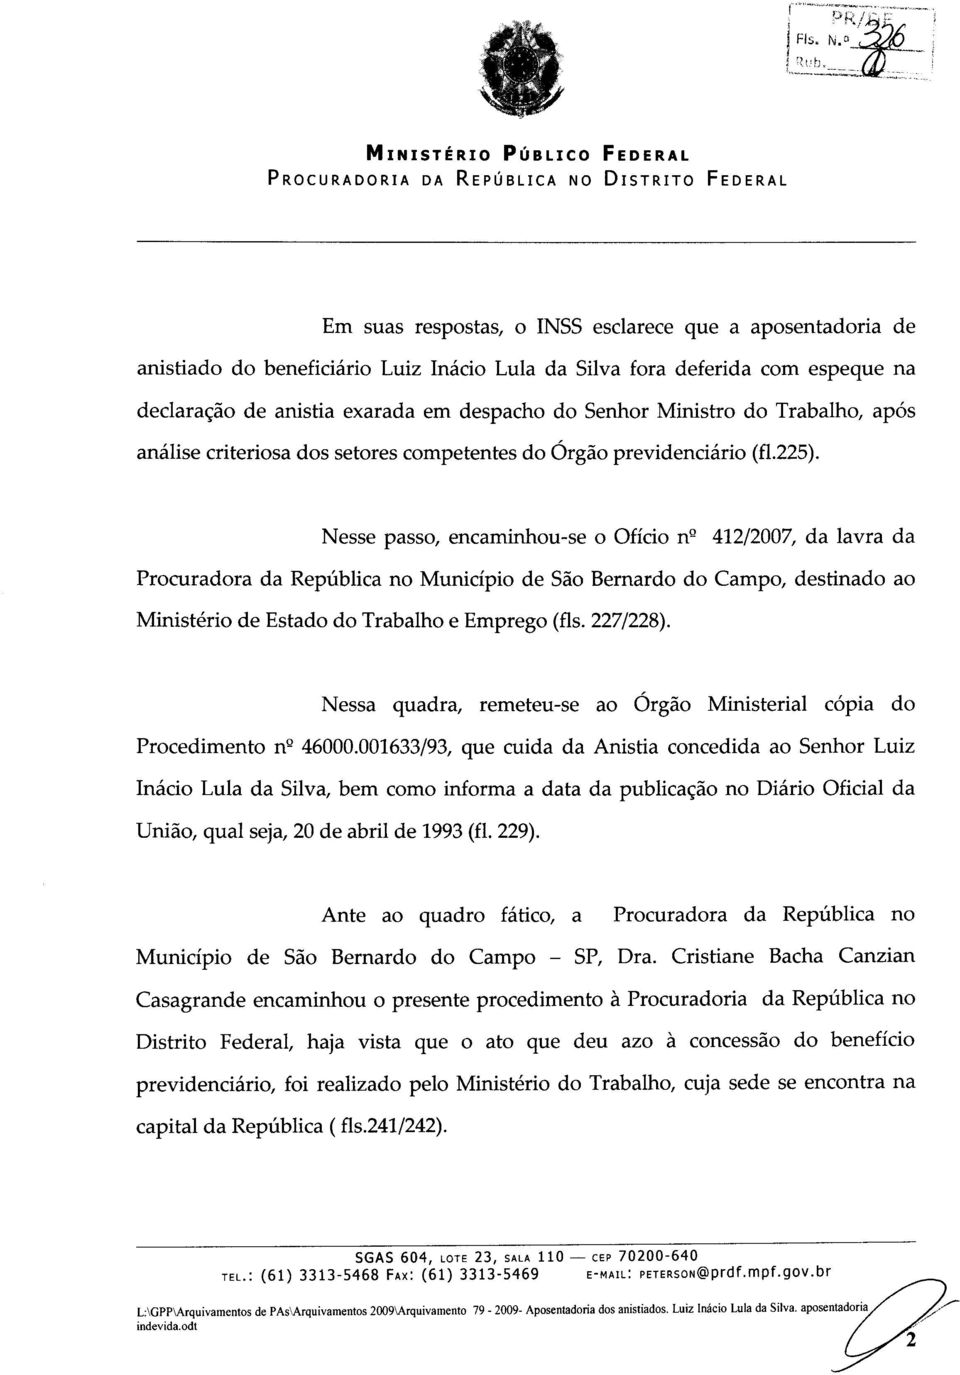 Nesse passo, encaminhou-se 0 Oficio n Q 412/2007, da lavra da Procuradora da Republica no Municipio de Sao Bernardo do Campo, destinado ao Ministerio de Estado do Trabalho e Emprego ( Is.227/228).